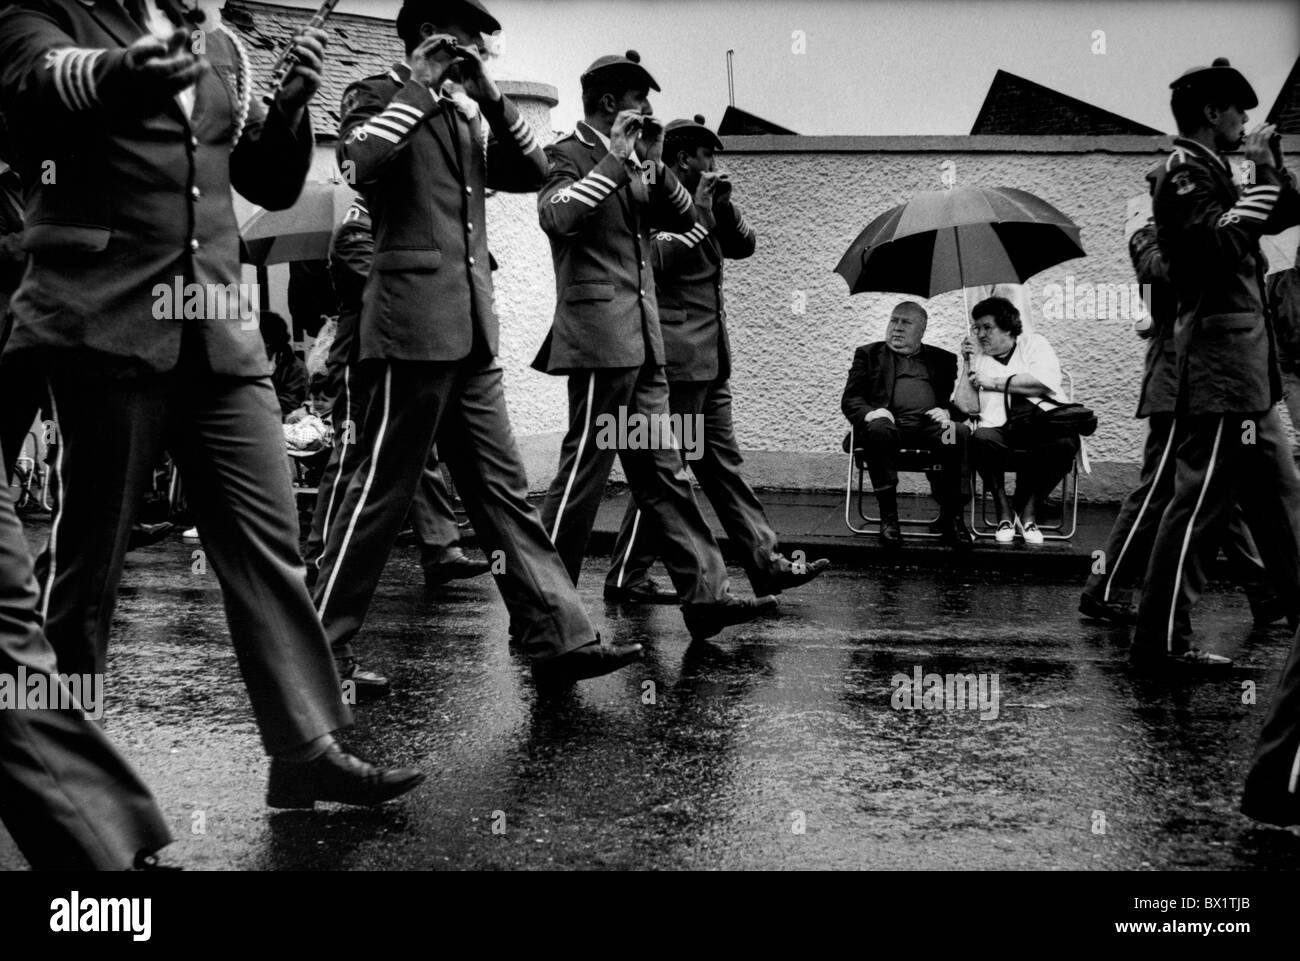 Orange-Parade durch Richill, Grafschaft Armargh. Fünfundzwanzigtausend verkünden ihre Treue zu Gott und Krone. Juli 1994. Nördlichen Stockfoto